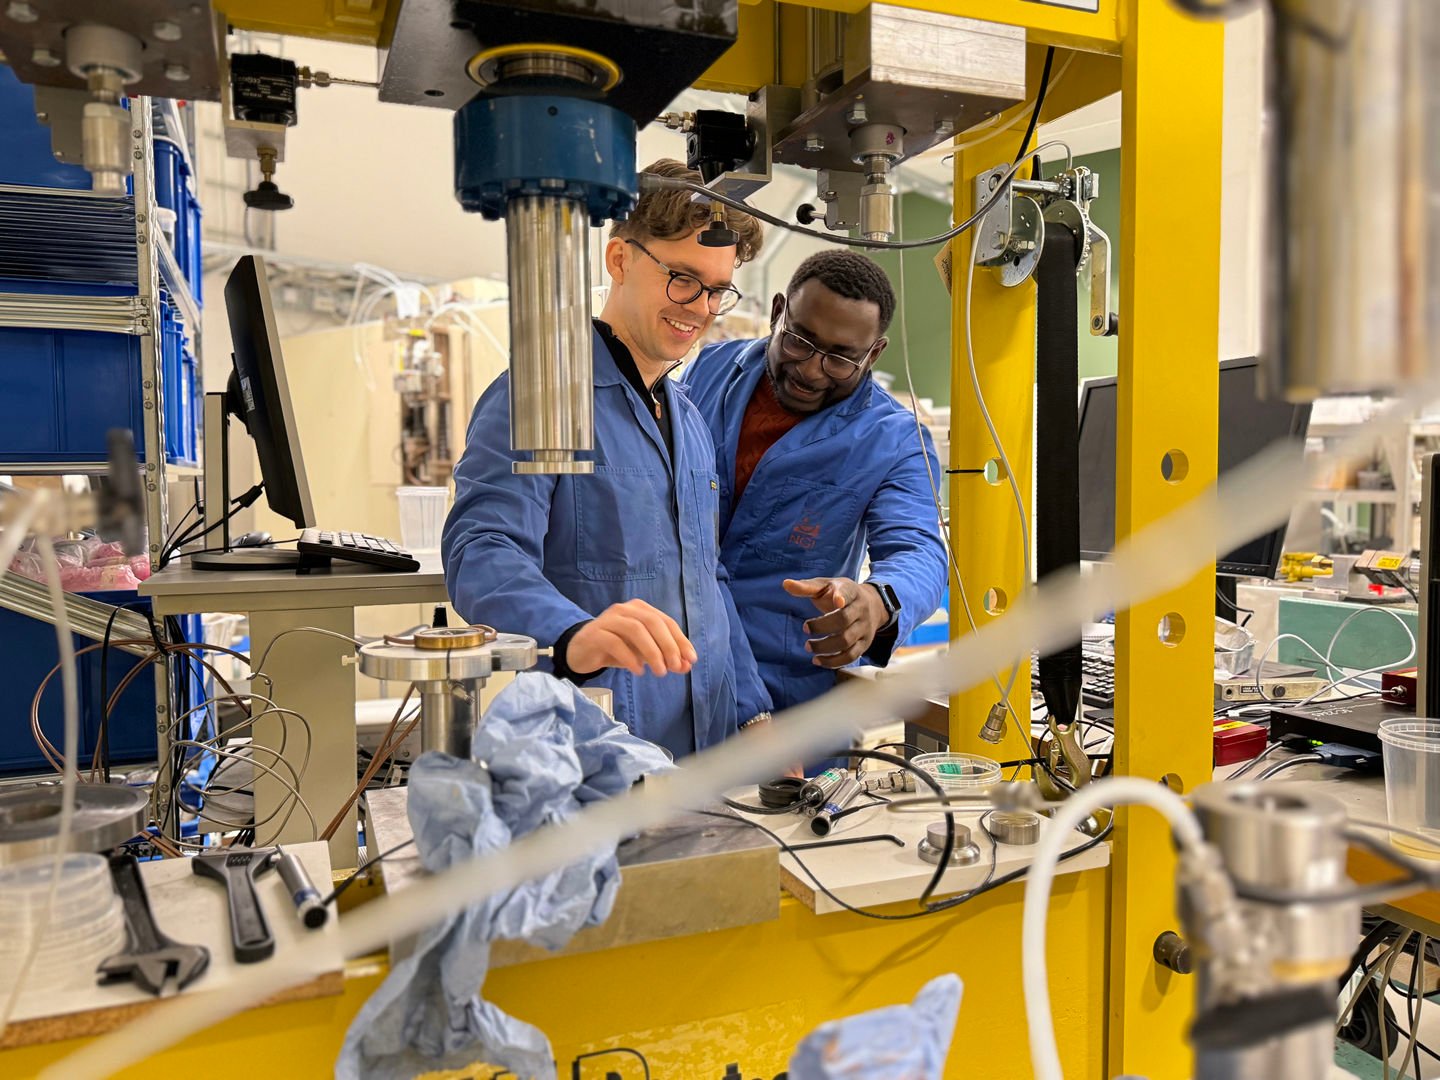 Fredrik og Jacob, iført hver sin blå laboratoriefrakk, står i et mekanisk laboratorium og kikker på en gul maskin.